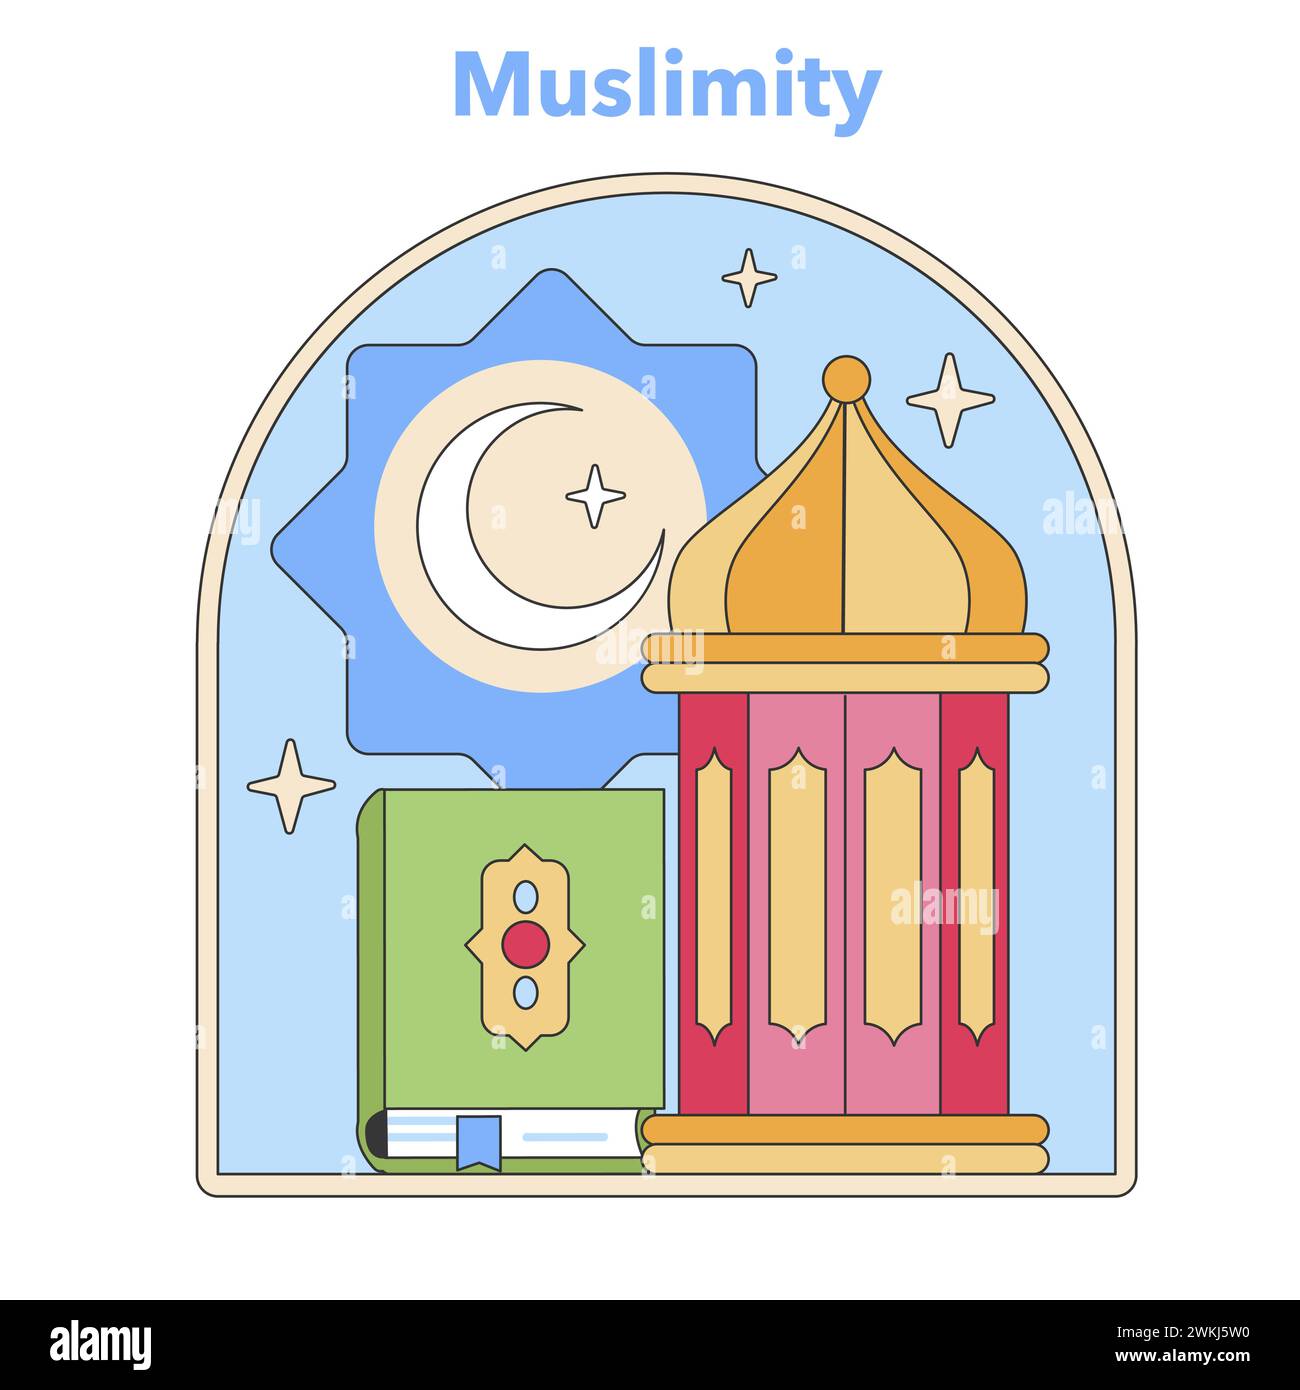 Icona della Muslimity che racchiude la fede islamica. Presenta una moschea e Corano sotto una cupola celeste, che evoca riflessioni spirituali. Illustrazione vettoriale piatta. Illustrazione Vettoriale